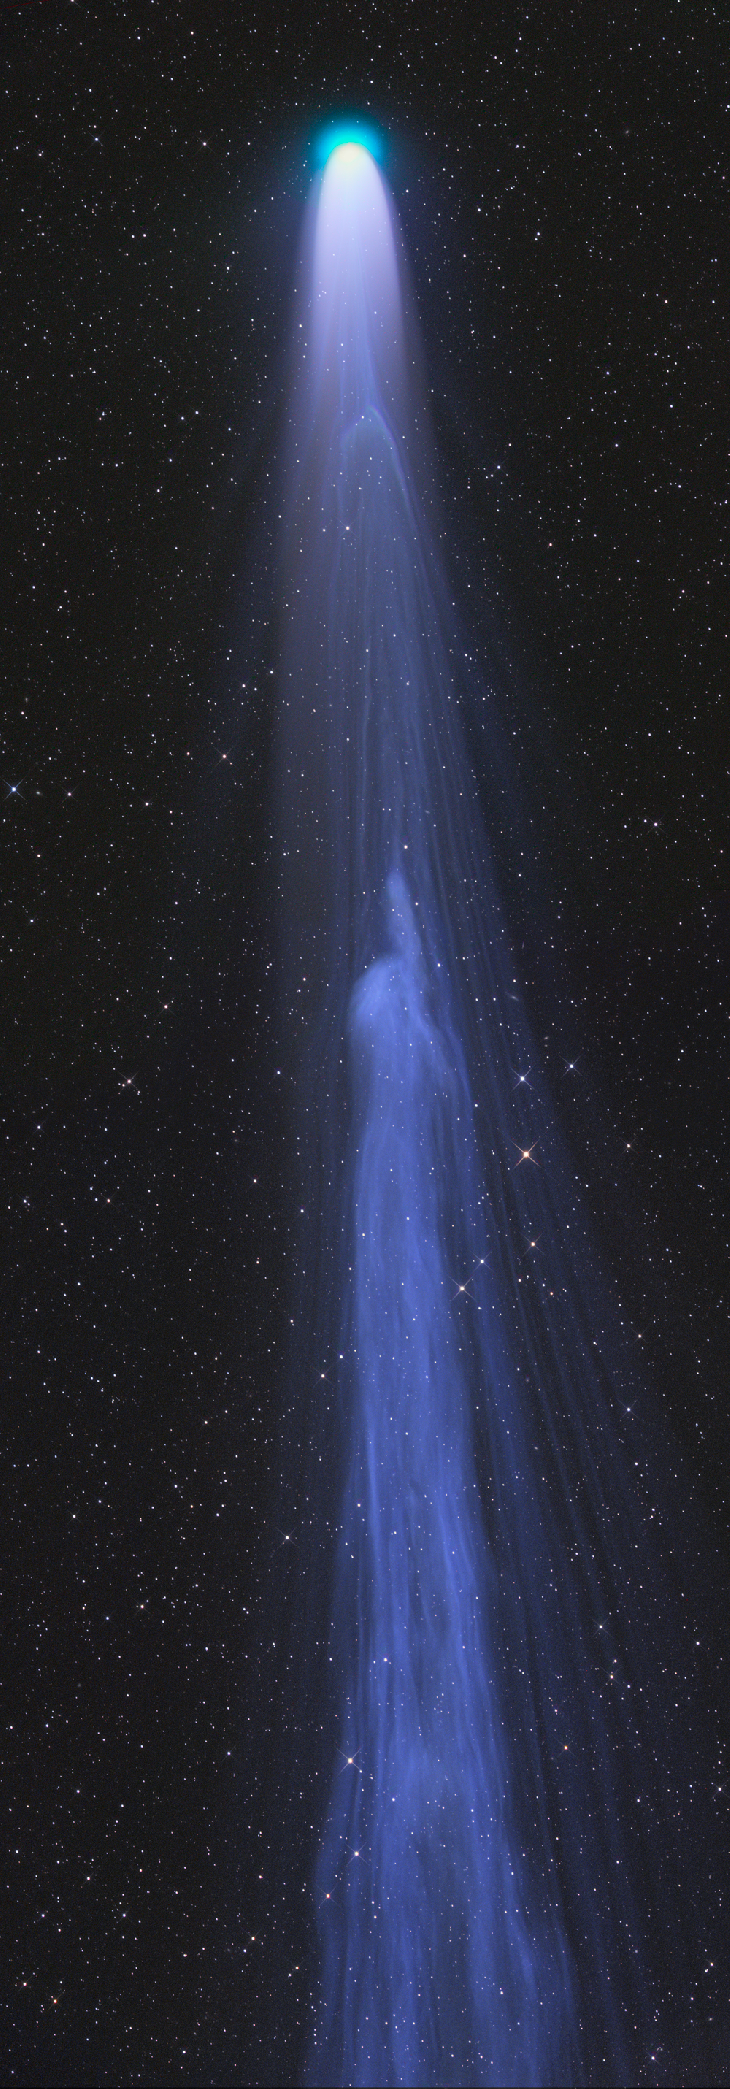 Ученые зафиксировали необычное космическое явление: известной комете ”оторвало” хвост (ФОТО)  - фото 2